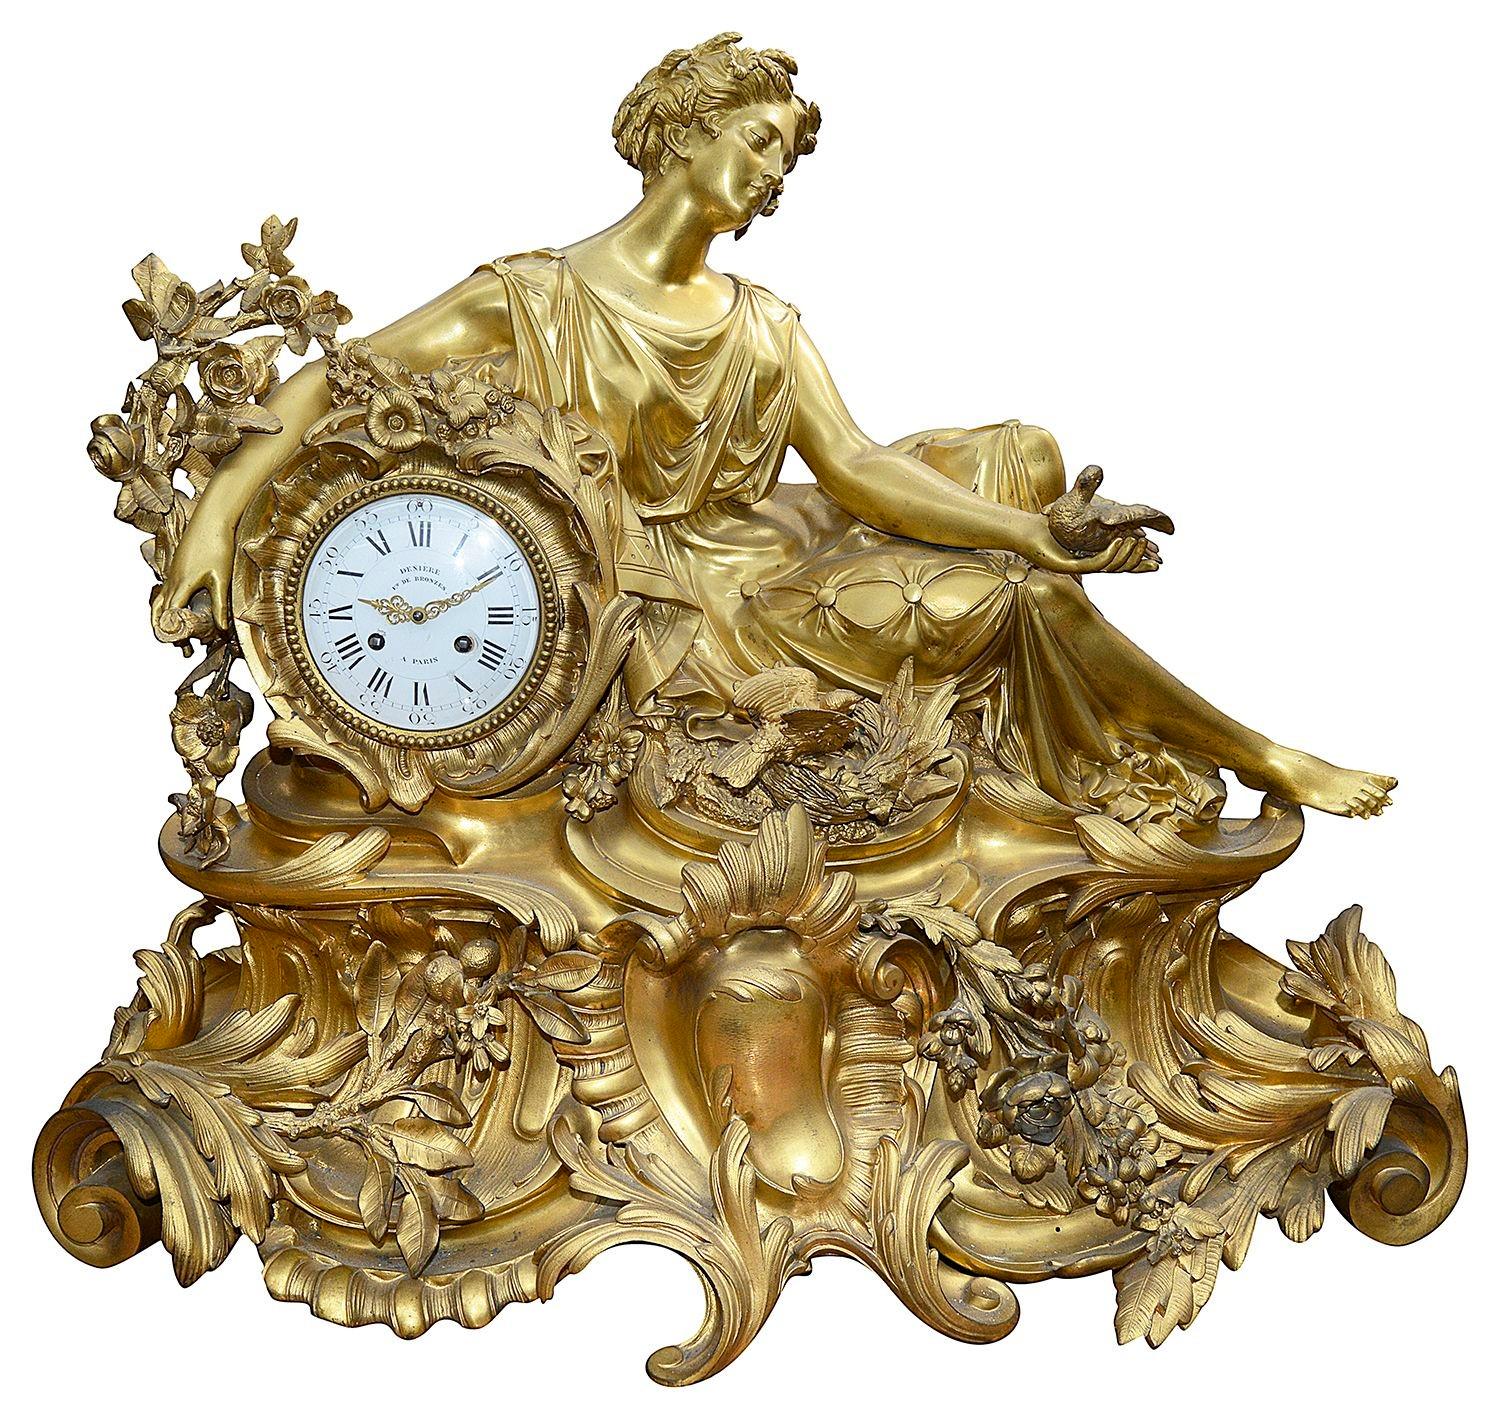 Une merveilleuse et impressionnante horloge garnie en bronze doré du 19ème siècle, par Deniere de Paris. L'horloge présente une jeune fille classique allongée tenant des colombes parmi des fleurs et des feuillages. Le cadran en émail blanc, le